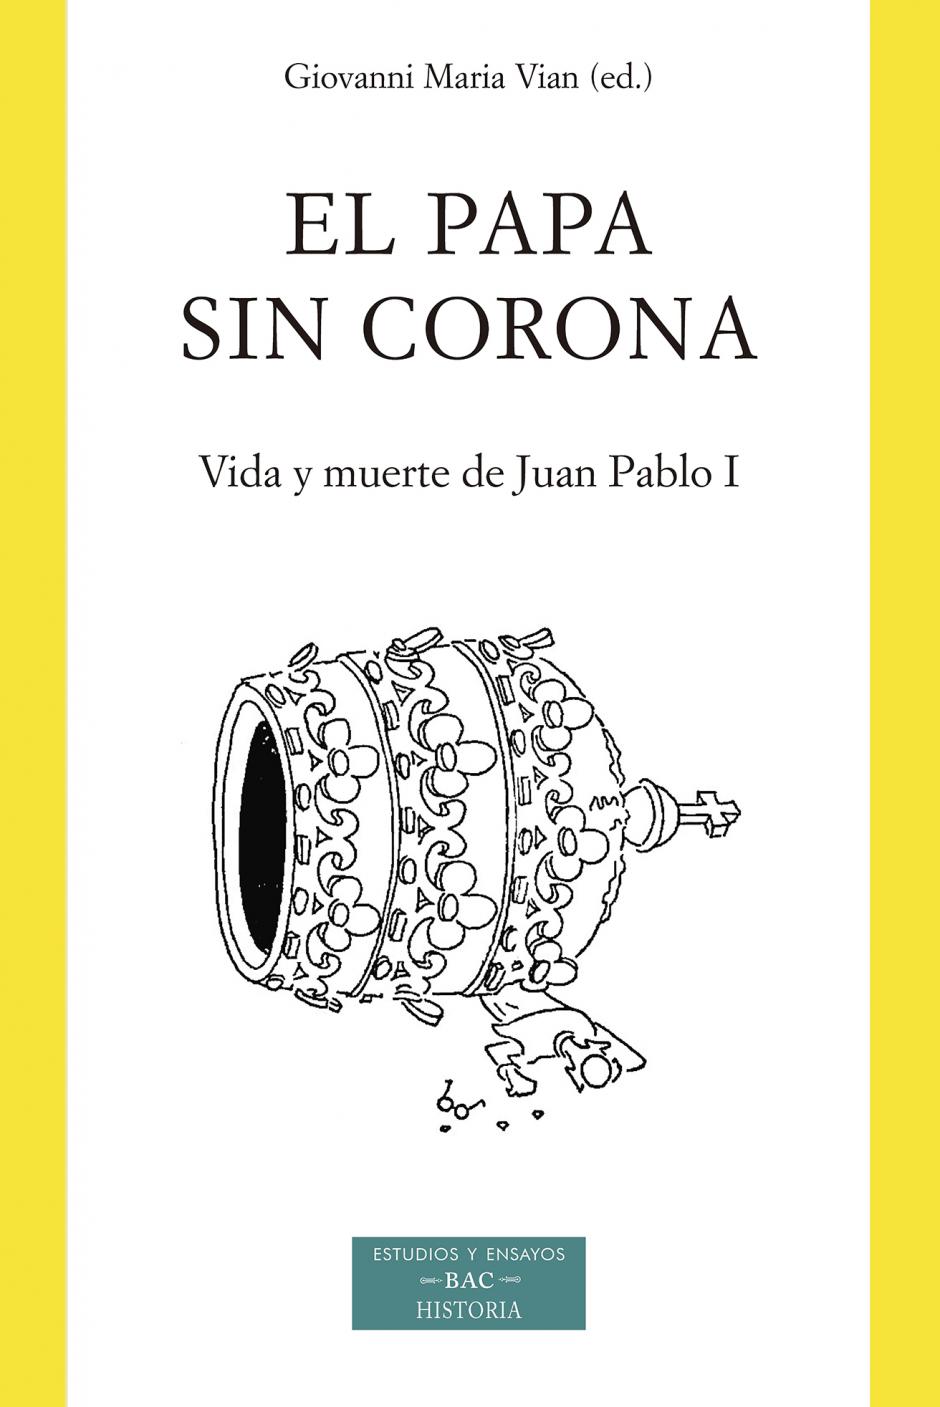 'El papa sin corona' (BAC)